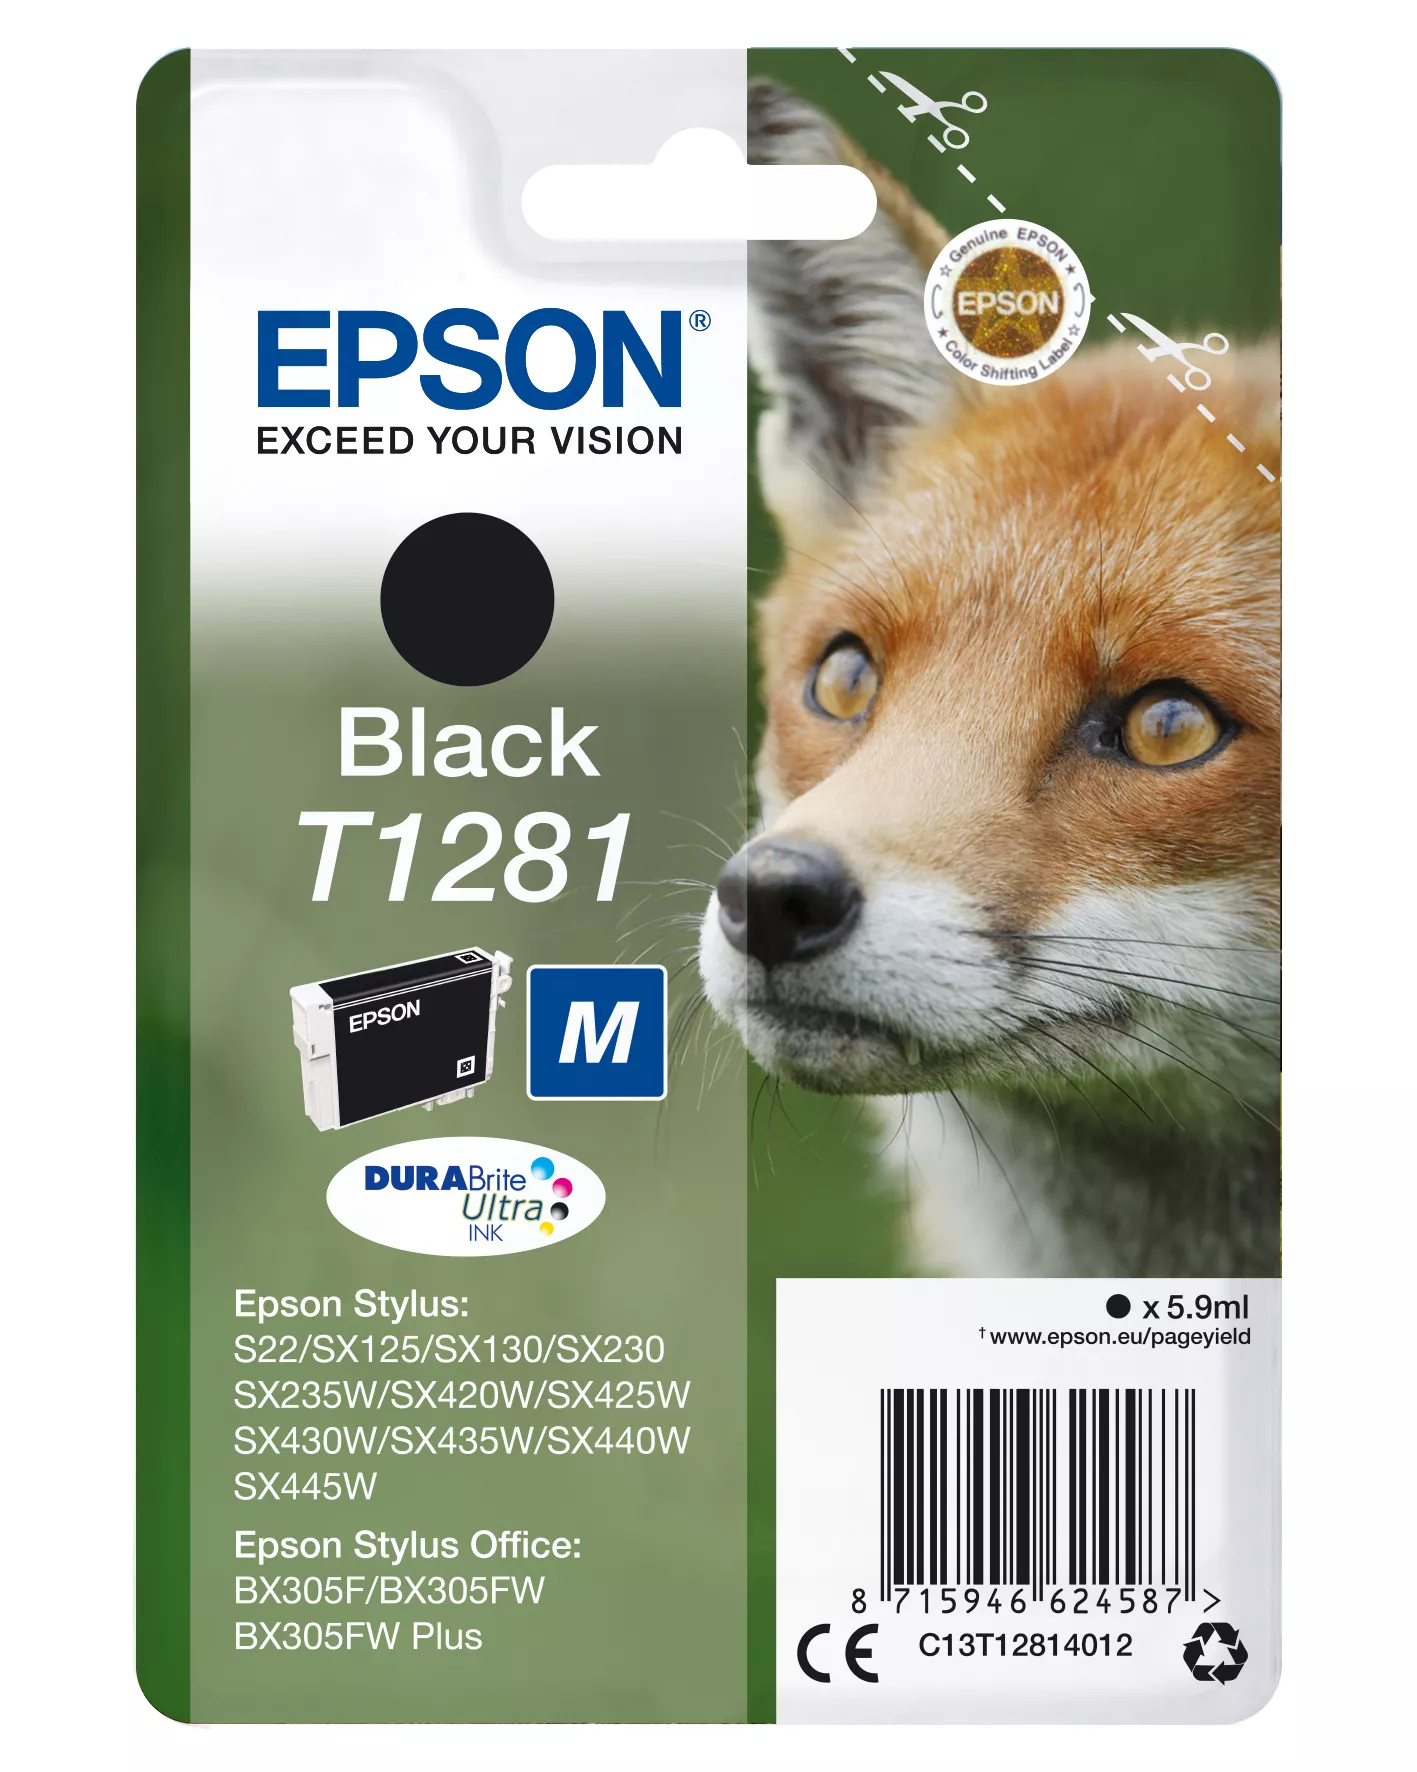 Achat EPSON T1281 cartouche d encre noir capacité standard 5.9ml au meilleur prix